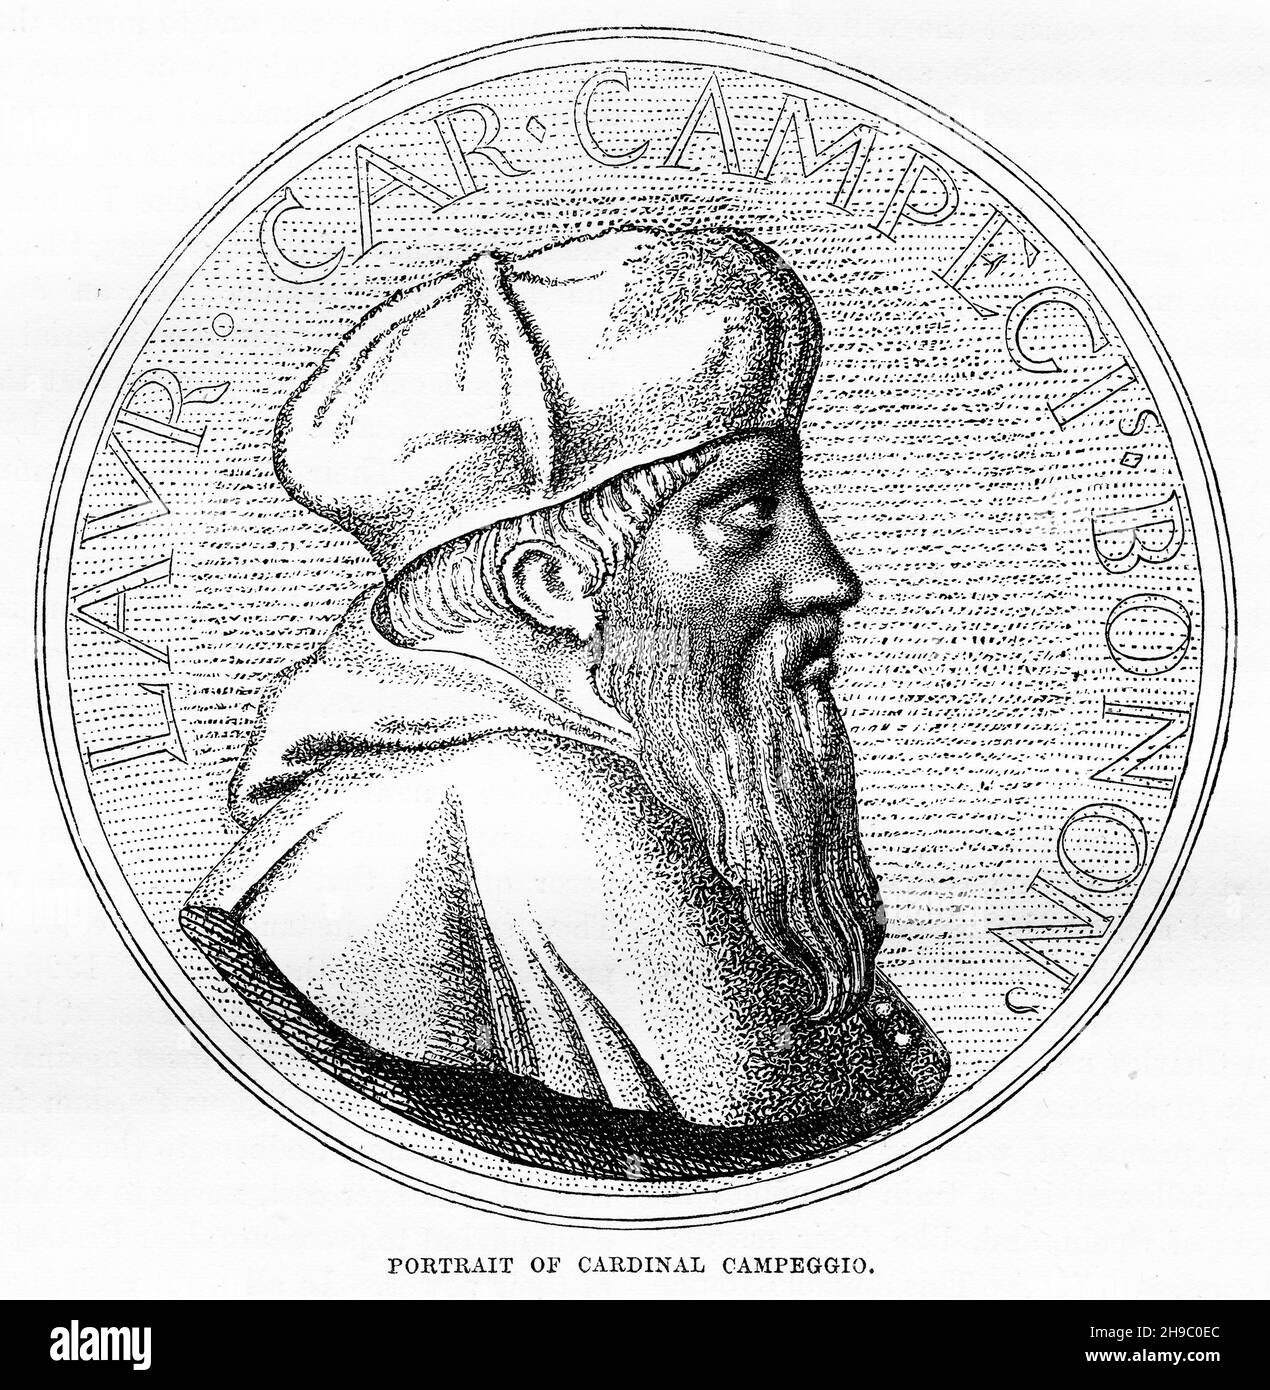 Incisione del Cardinale Campeggio (7 novembre 1474 – 19 luglio 1539) cardinale e politico italiano. Fu l'ultimo cardinale protettore d'Inghilterra. Foto Stock